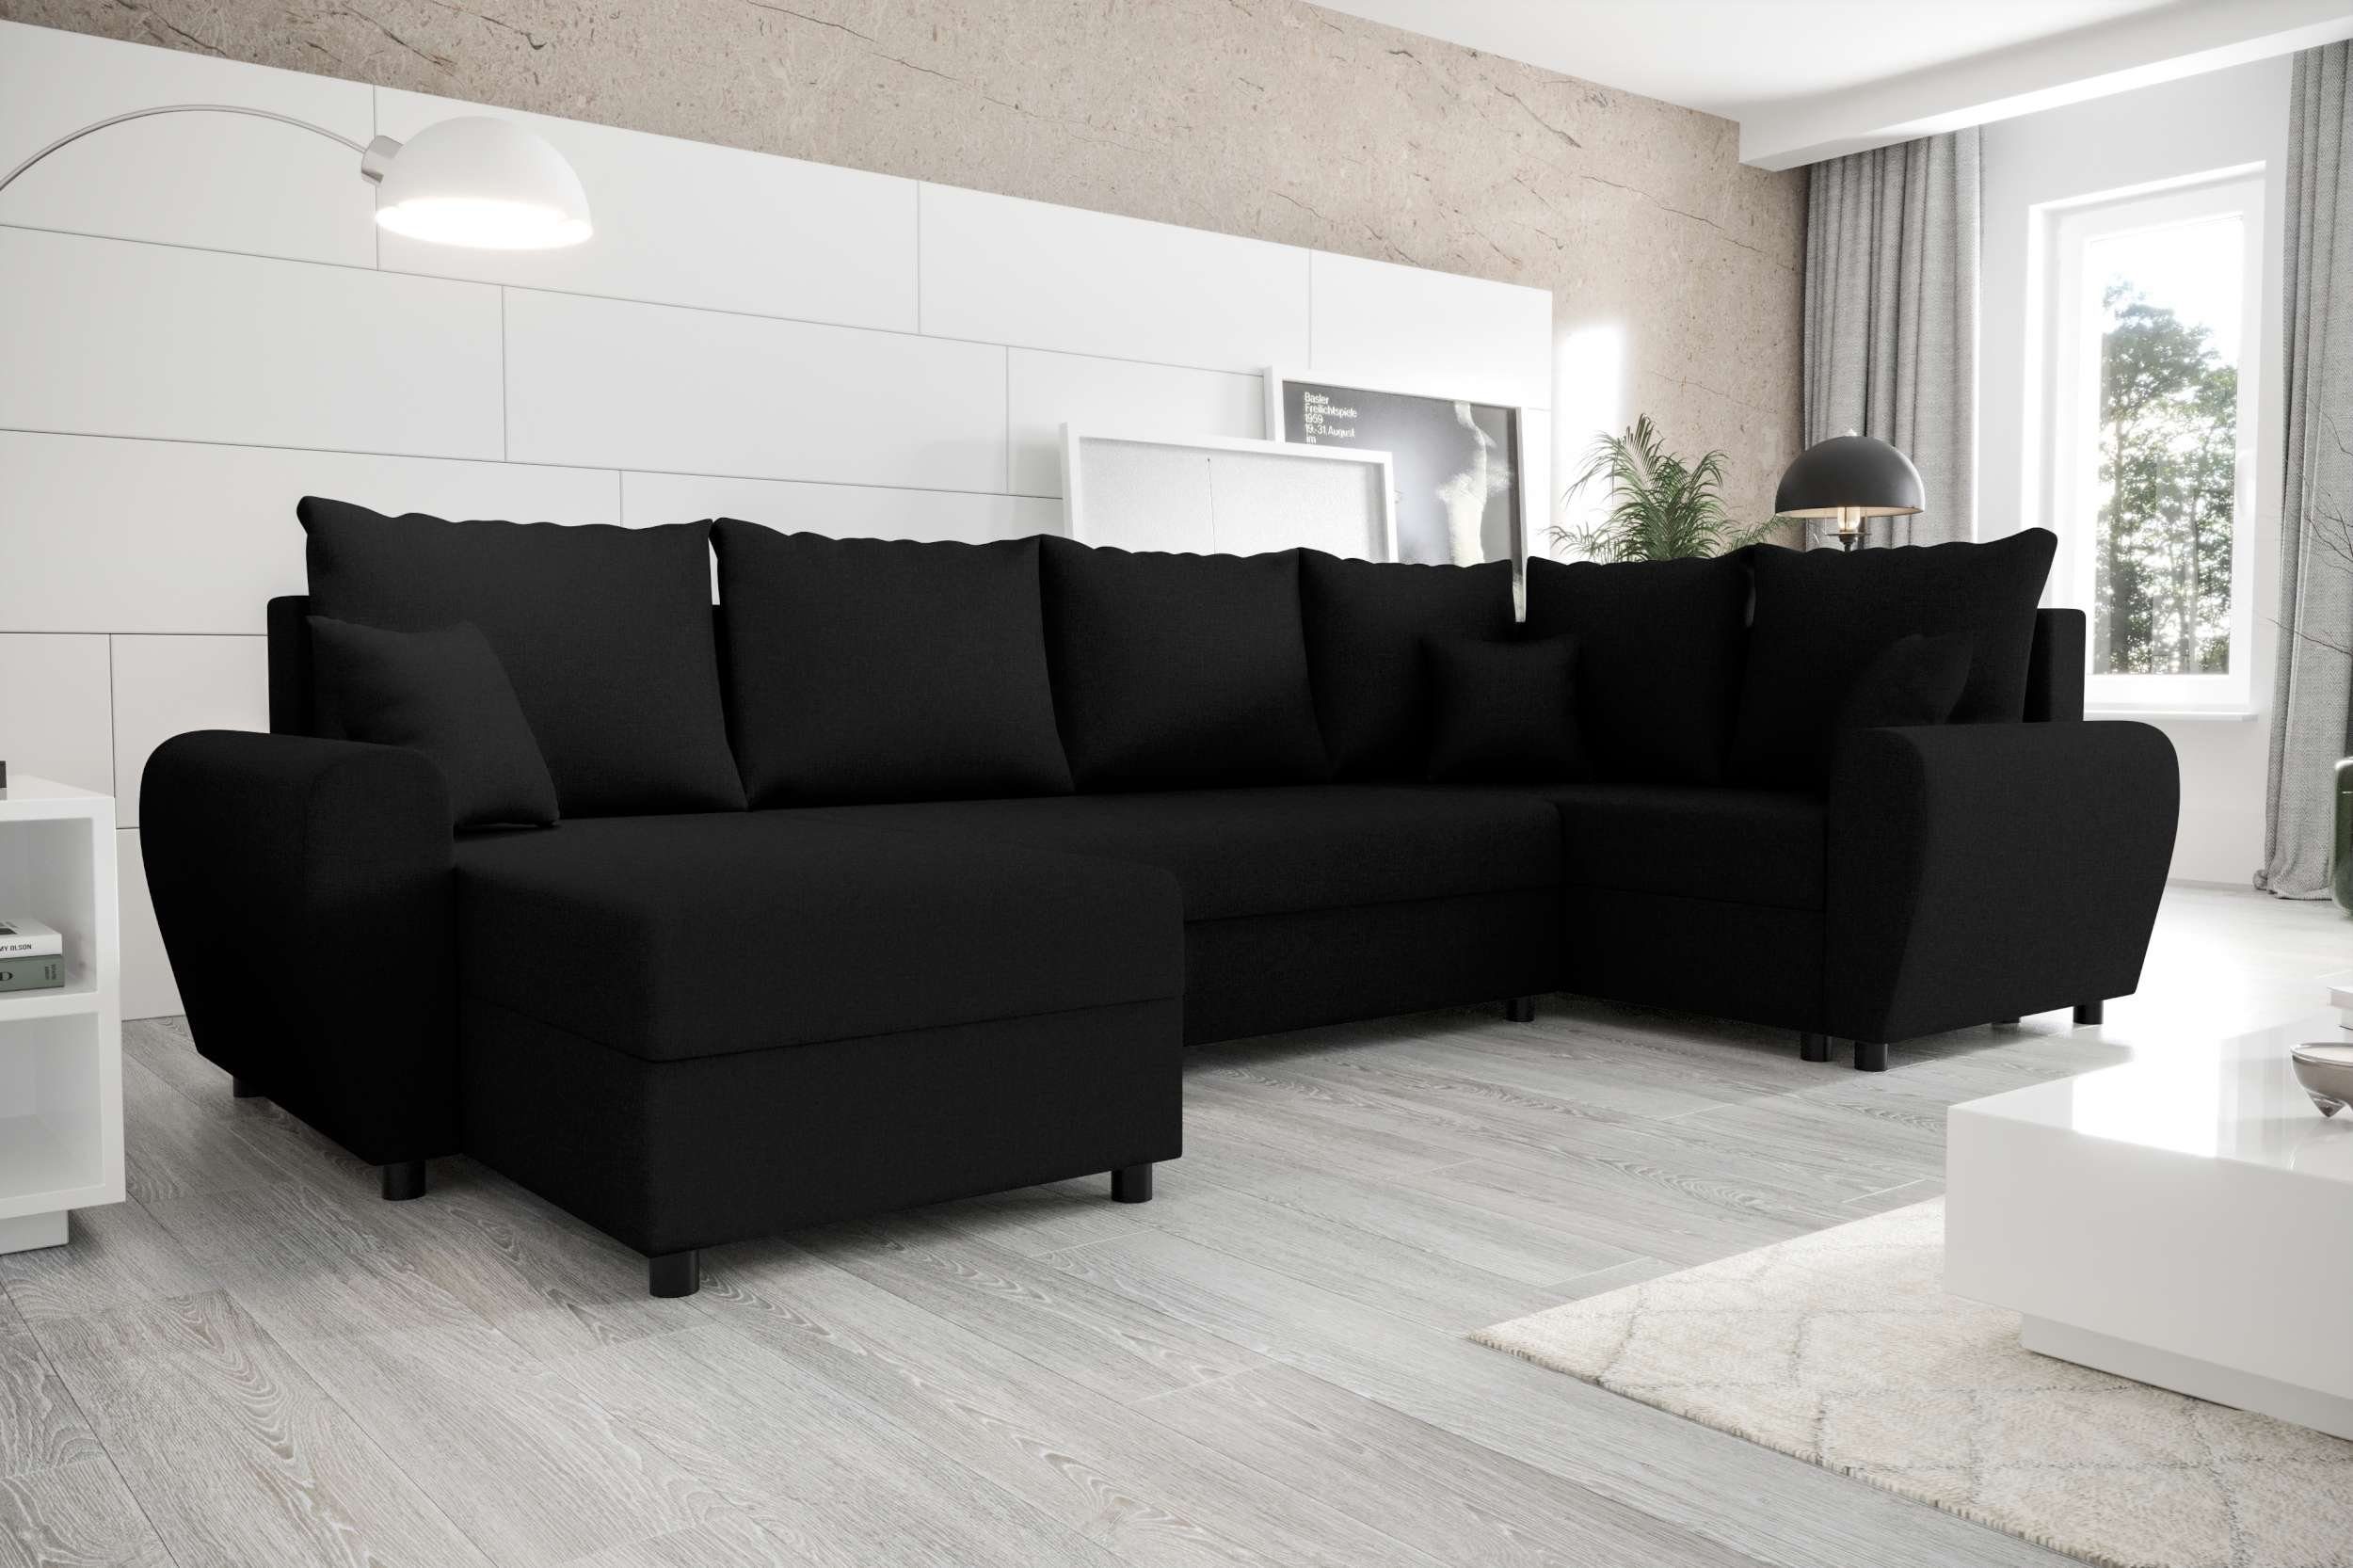 Stylefy Wohnlandschaft Sitzkomfort, mit mit Bettfunktion, Sofa, Bettkasten, U-Form, Haven, Modern Eckcouch, Design